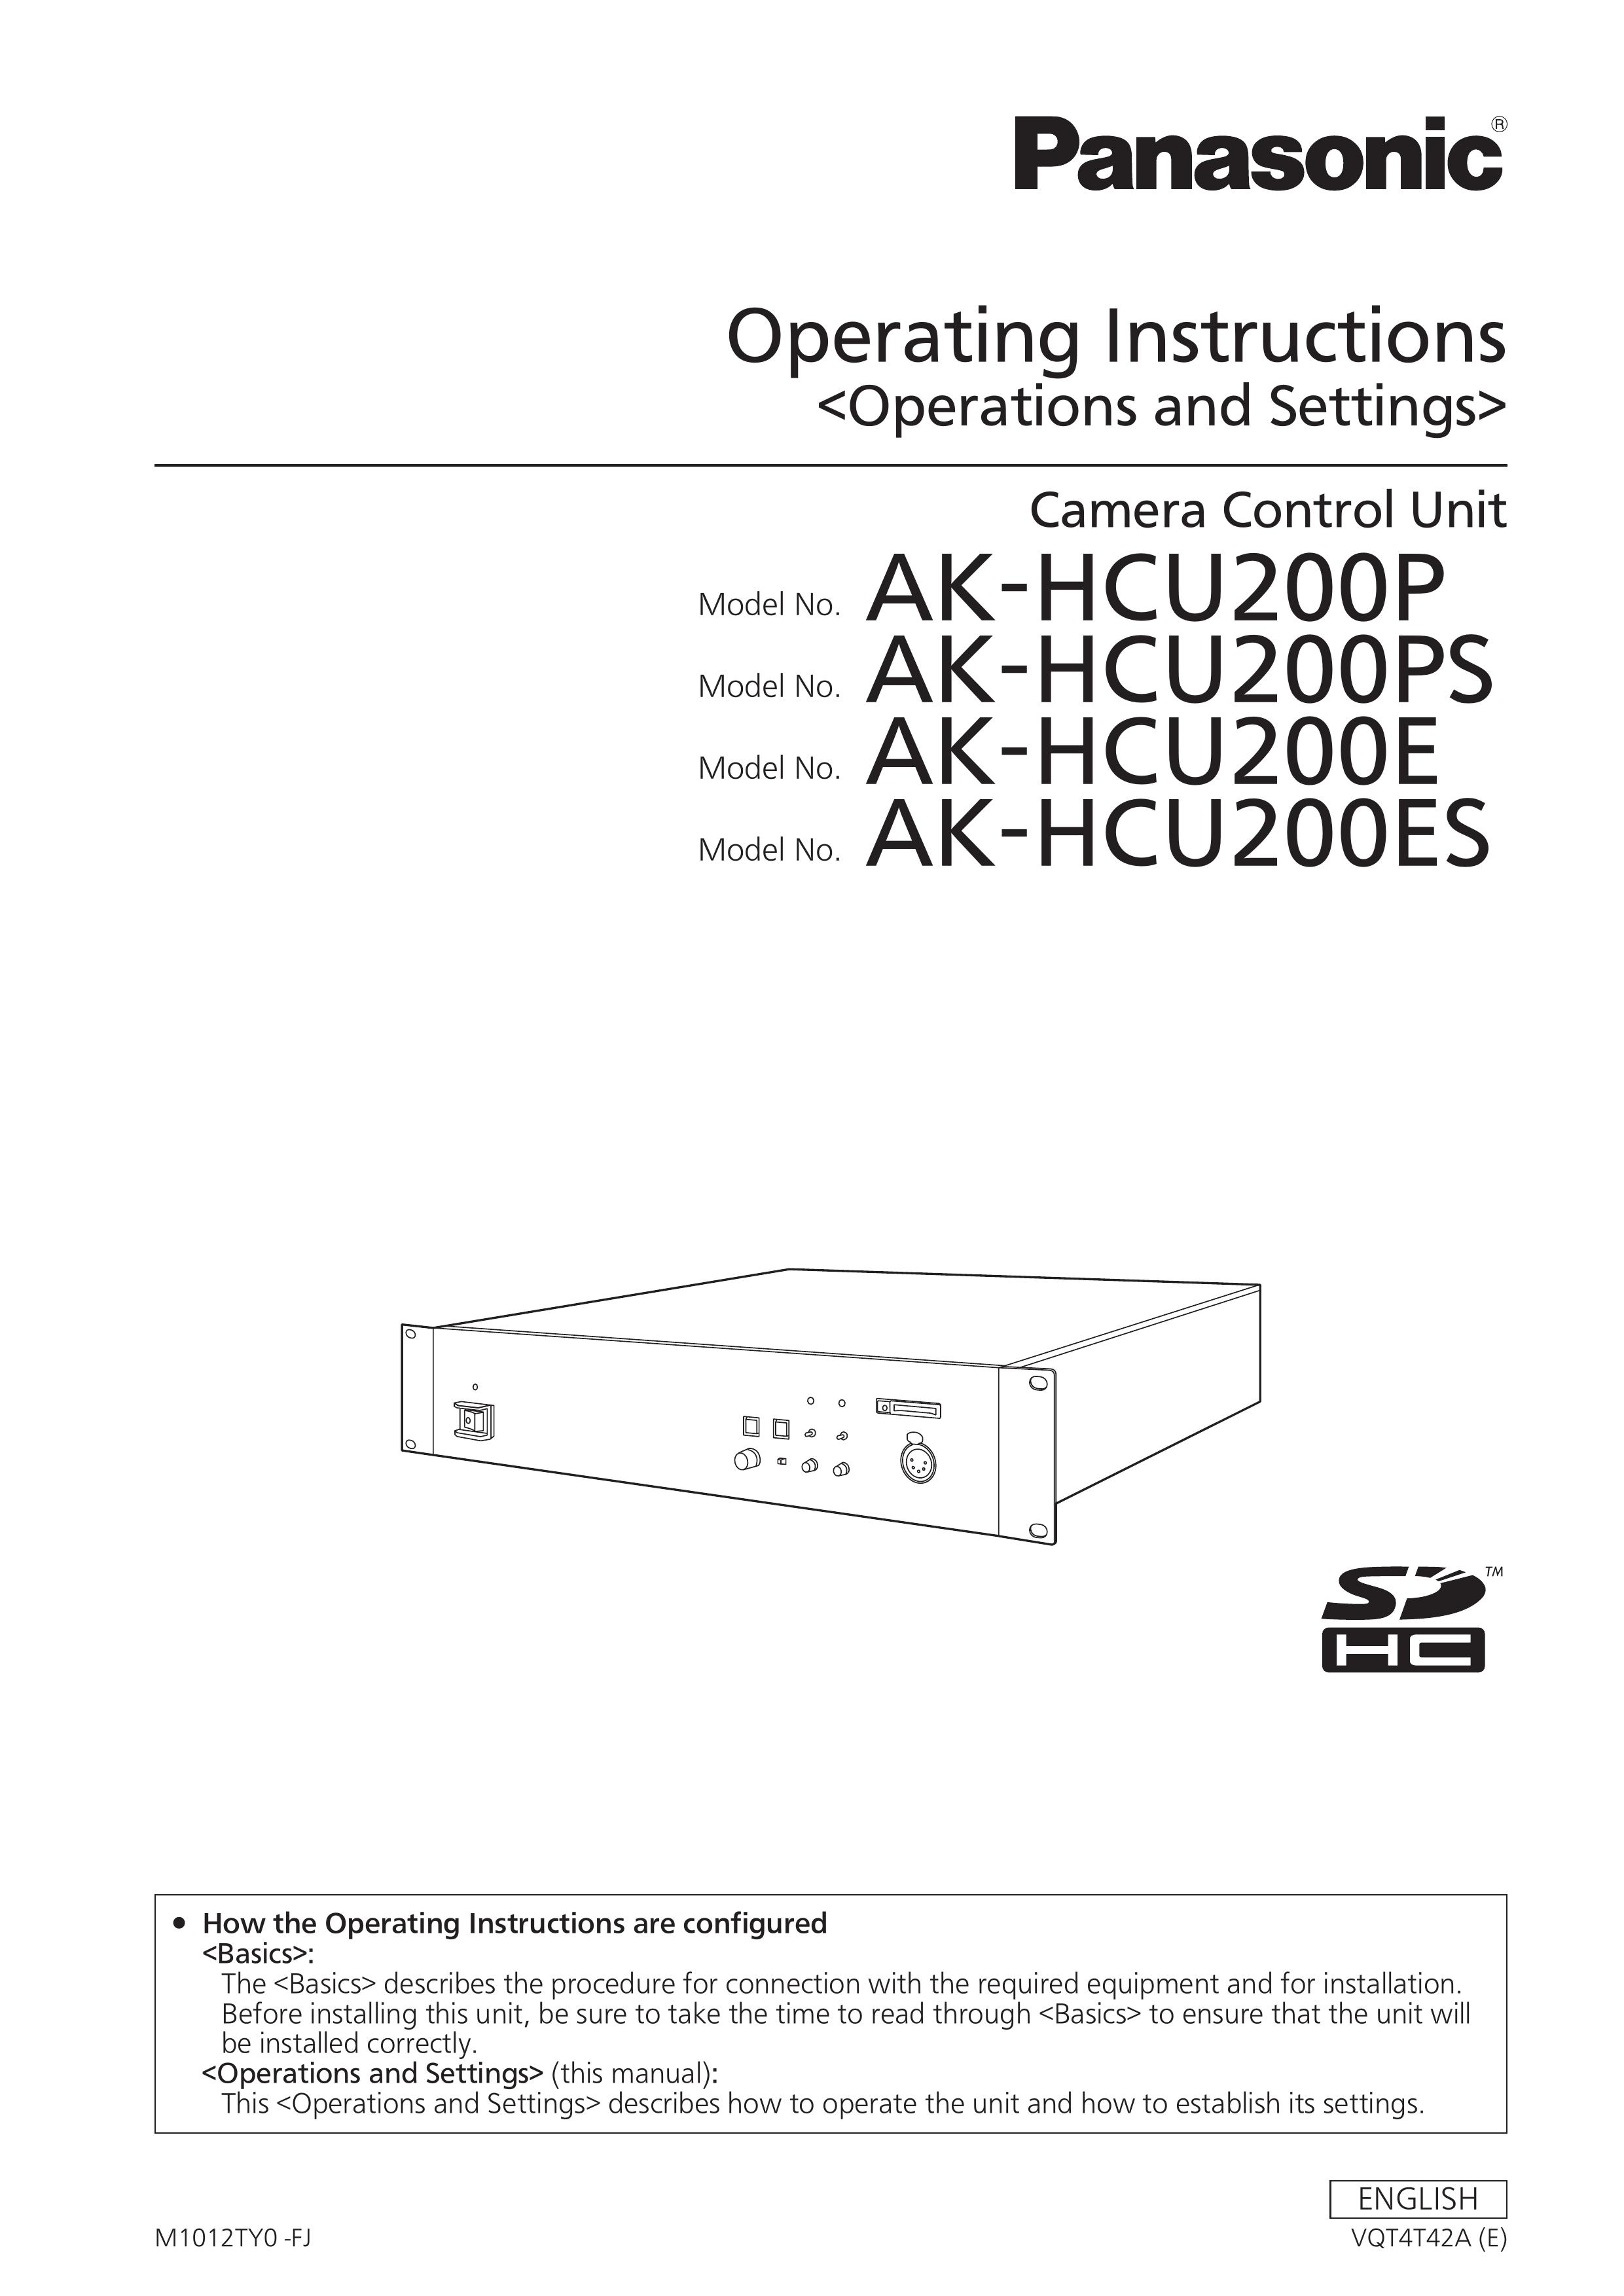 Panasonic AK-HCU200E Camera Accessories User Manual